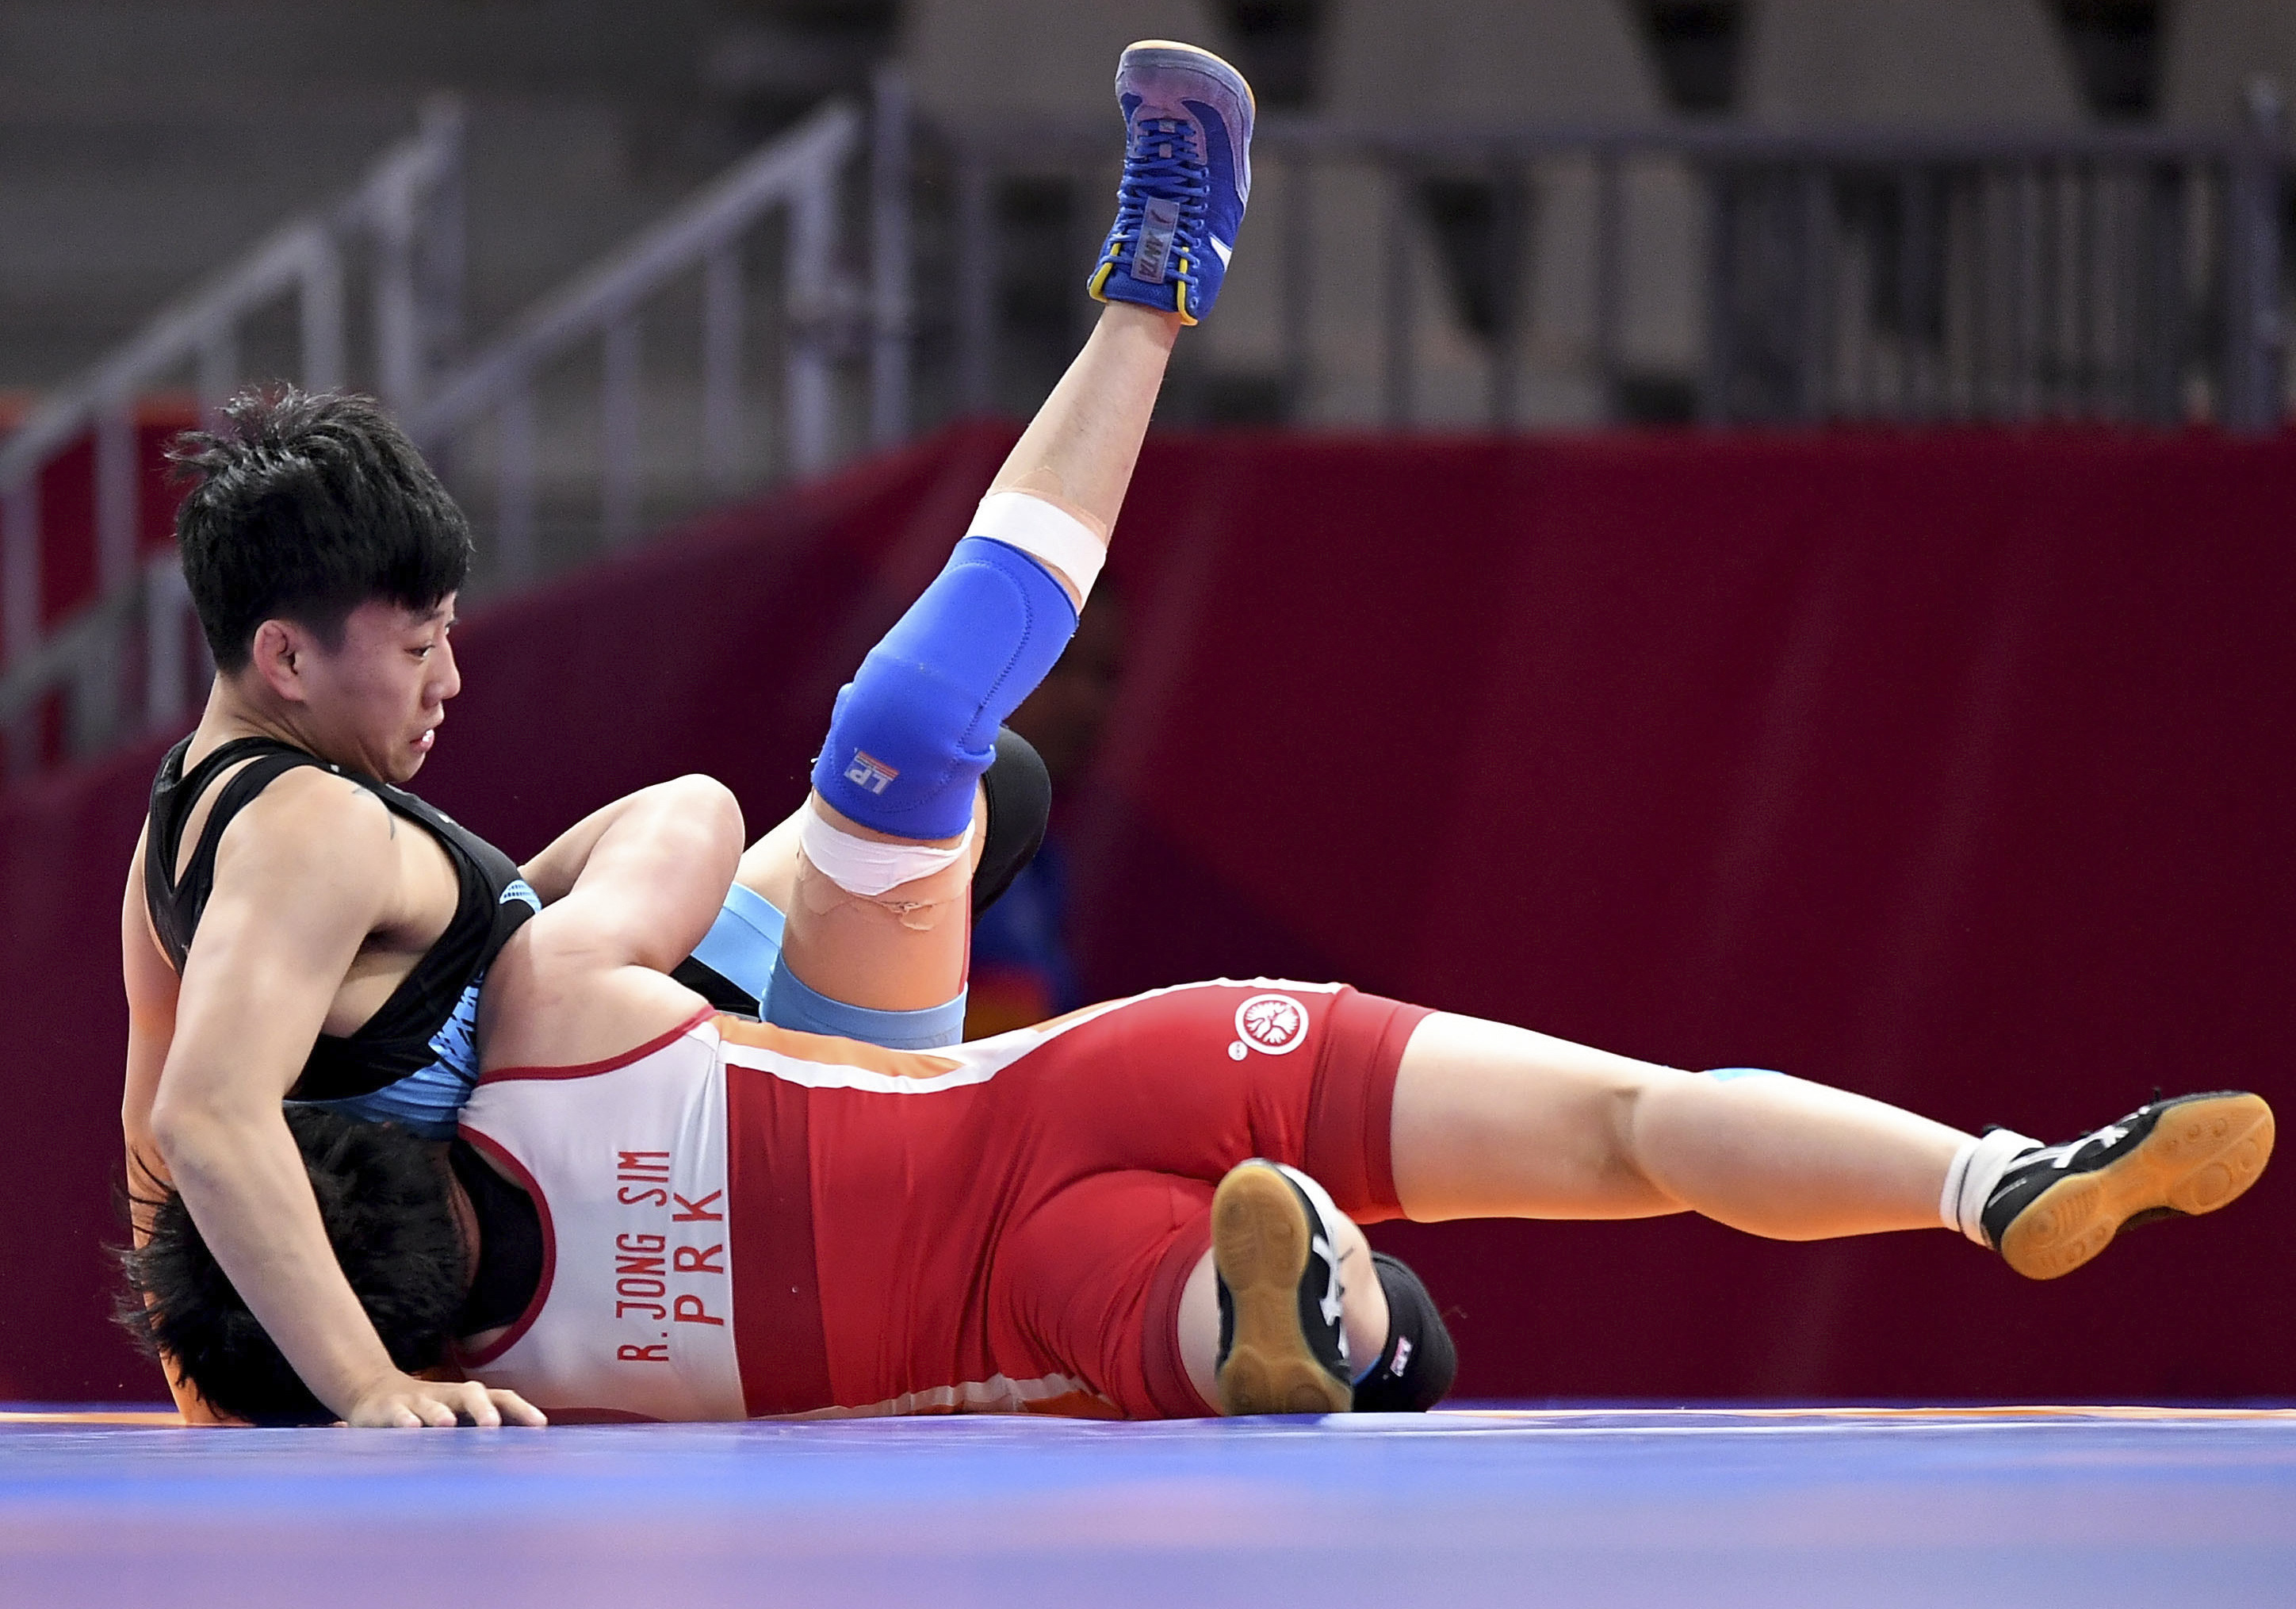 摔跤——女子自由式摔跤62公斤级复活赛:中国选手徐蕊无缘铜牌争夺战